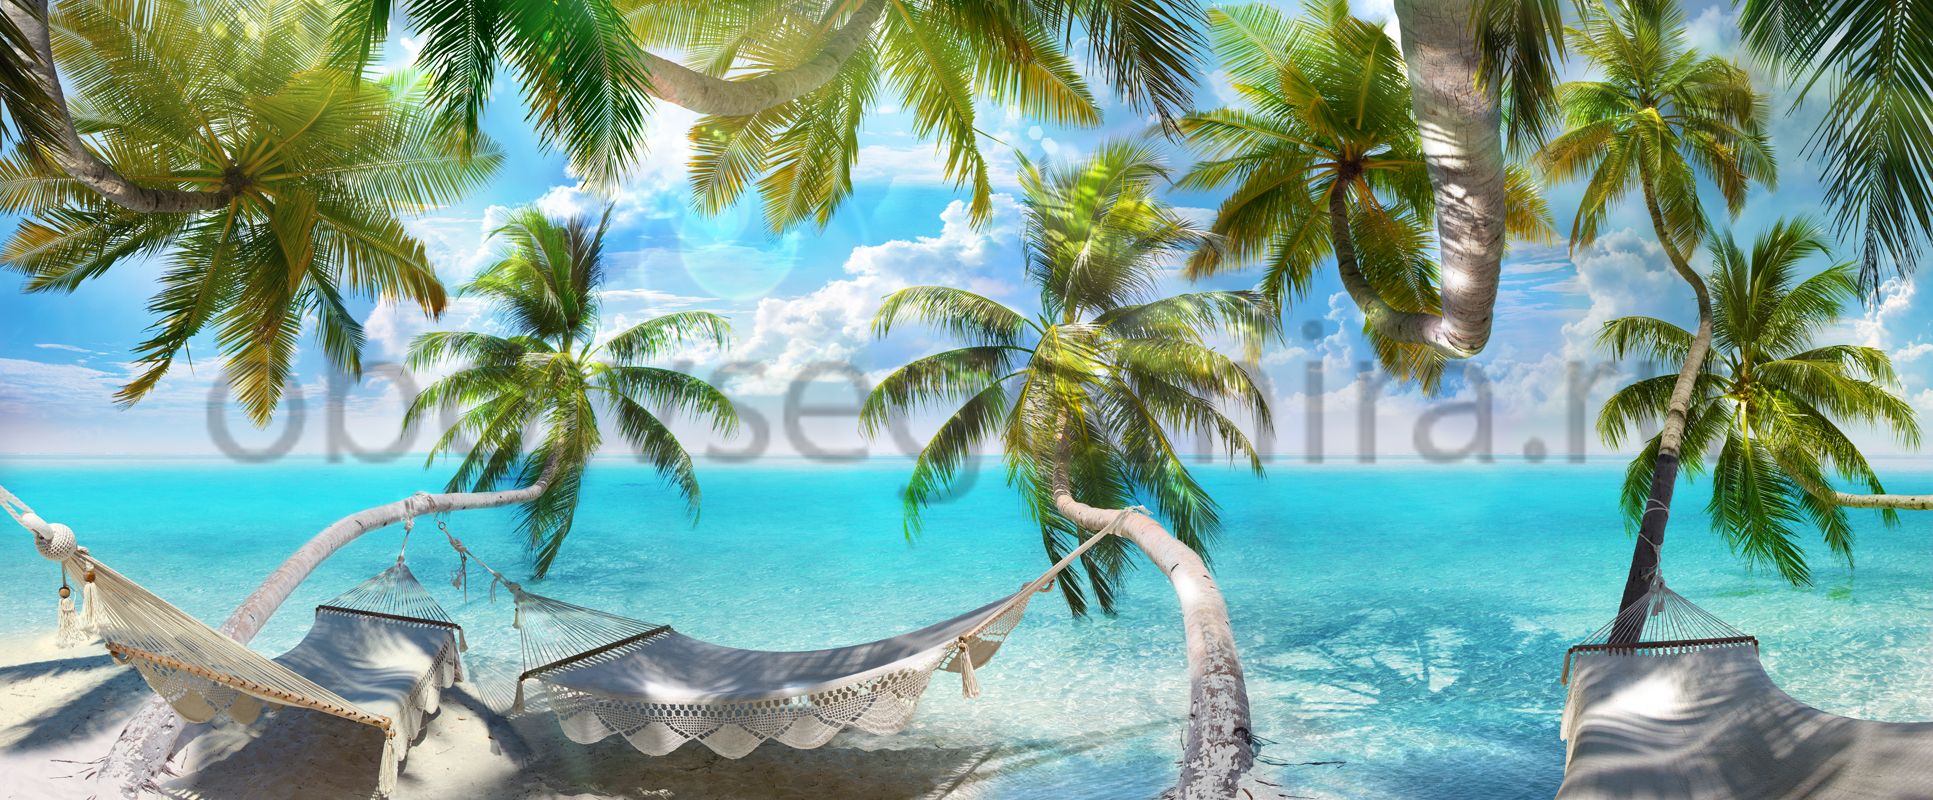 Фрески Пейзажи Пляжи и пальмы 6347